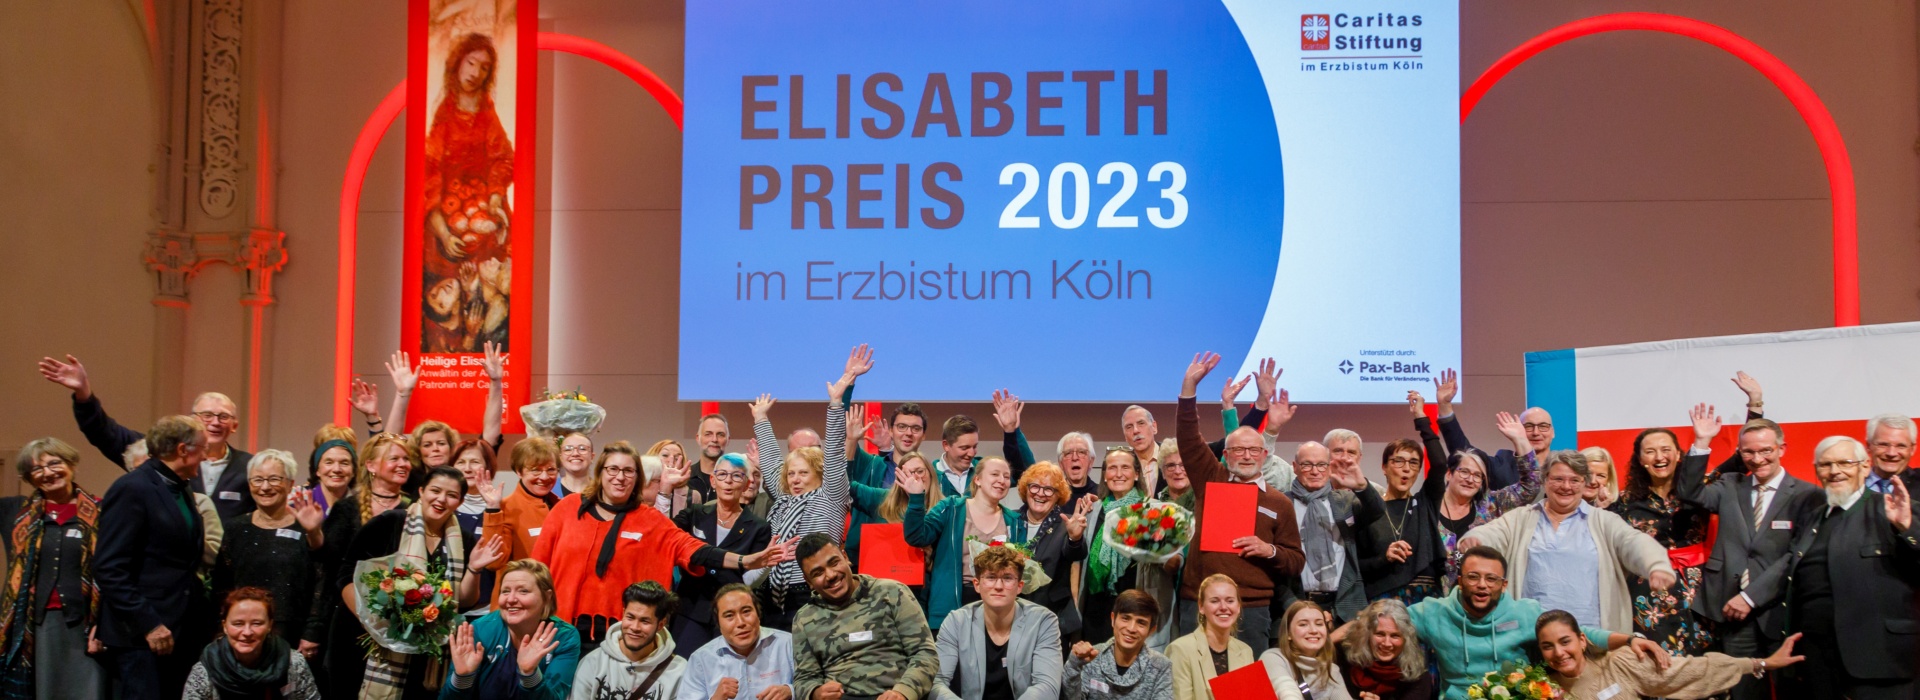 Elisabeth-Preis 2023